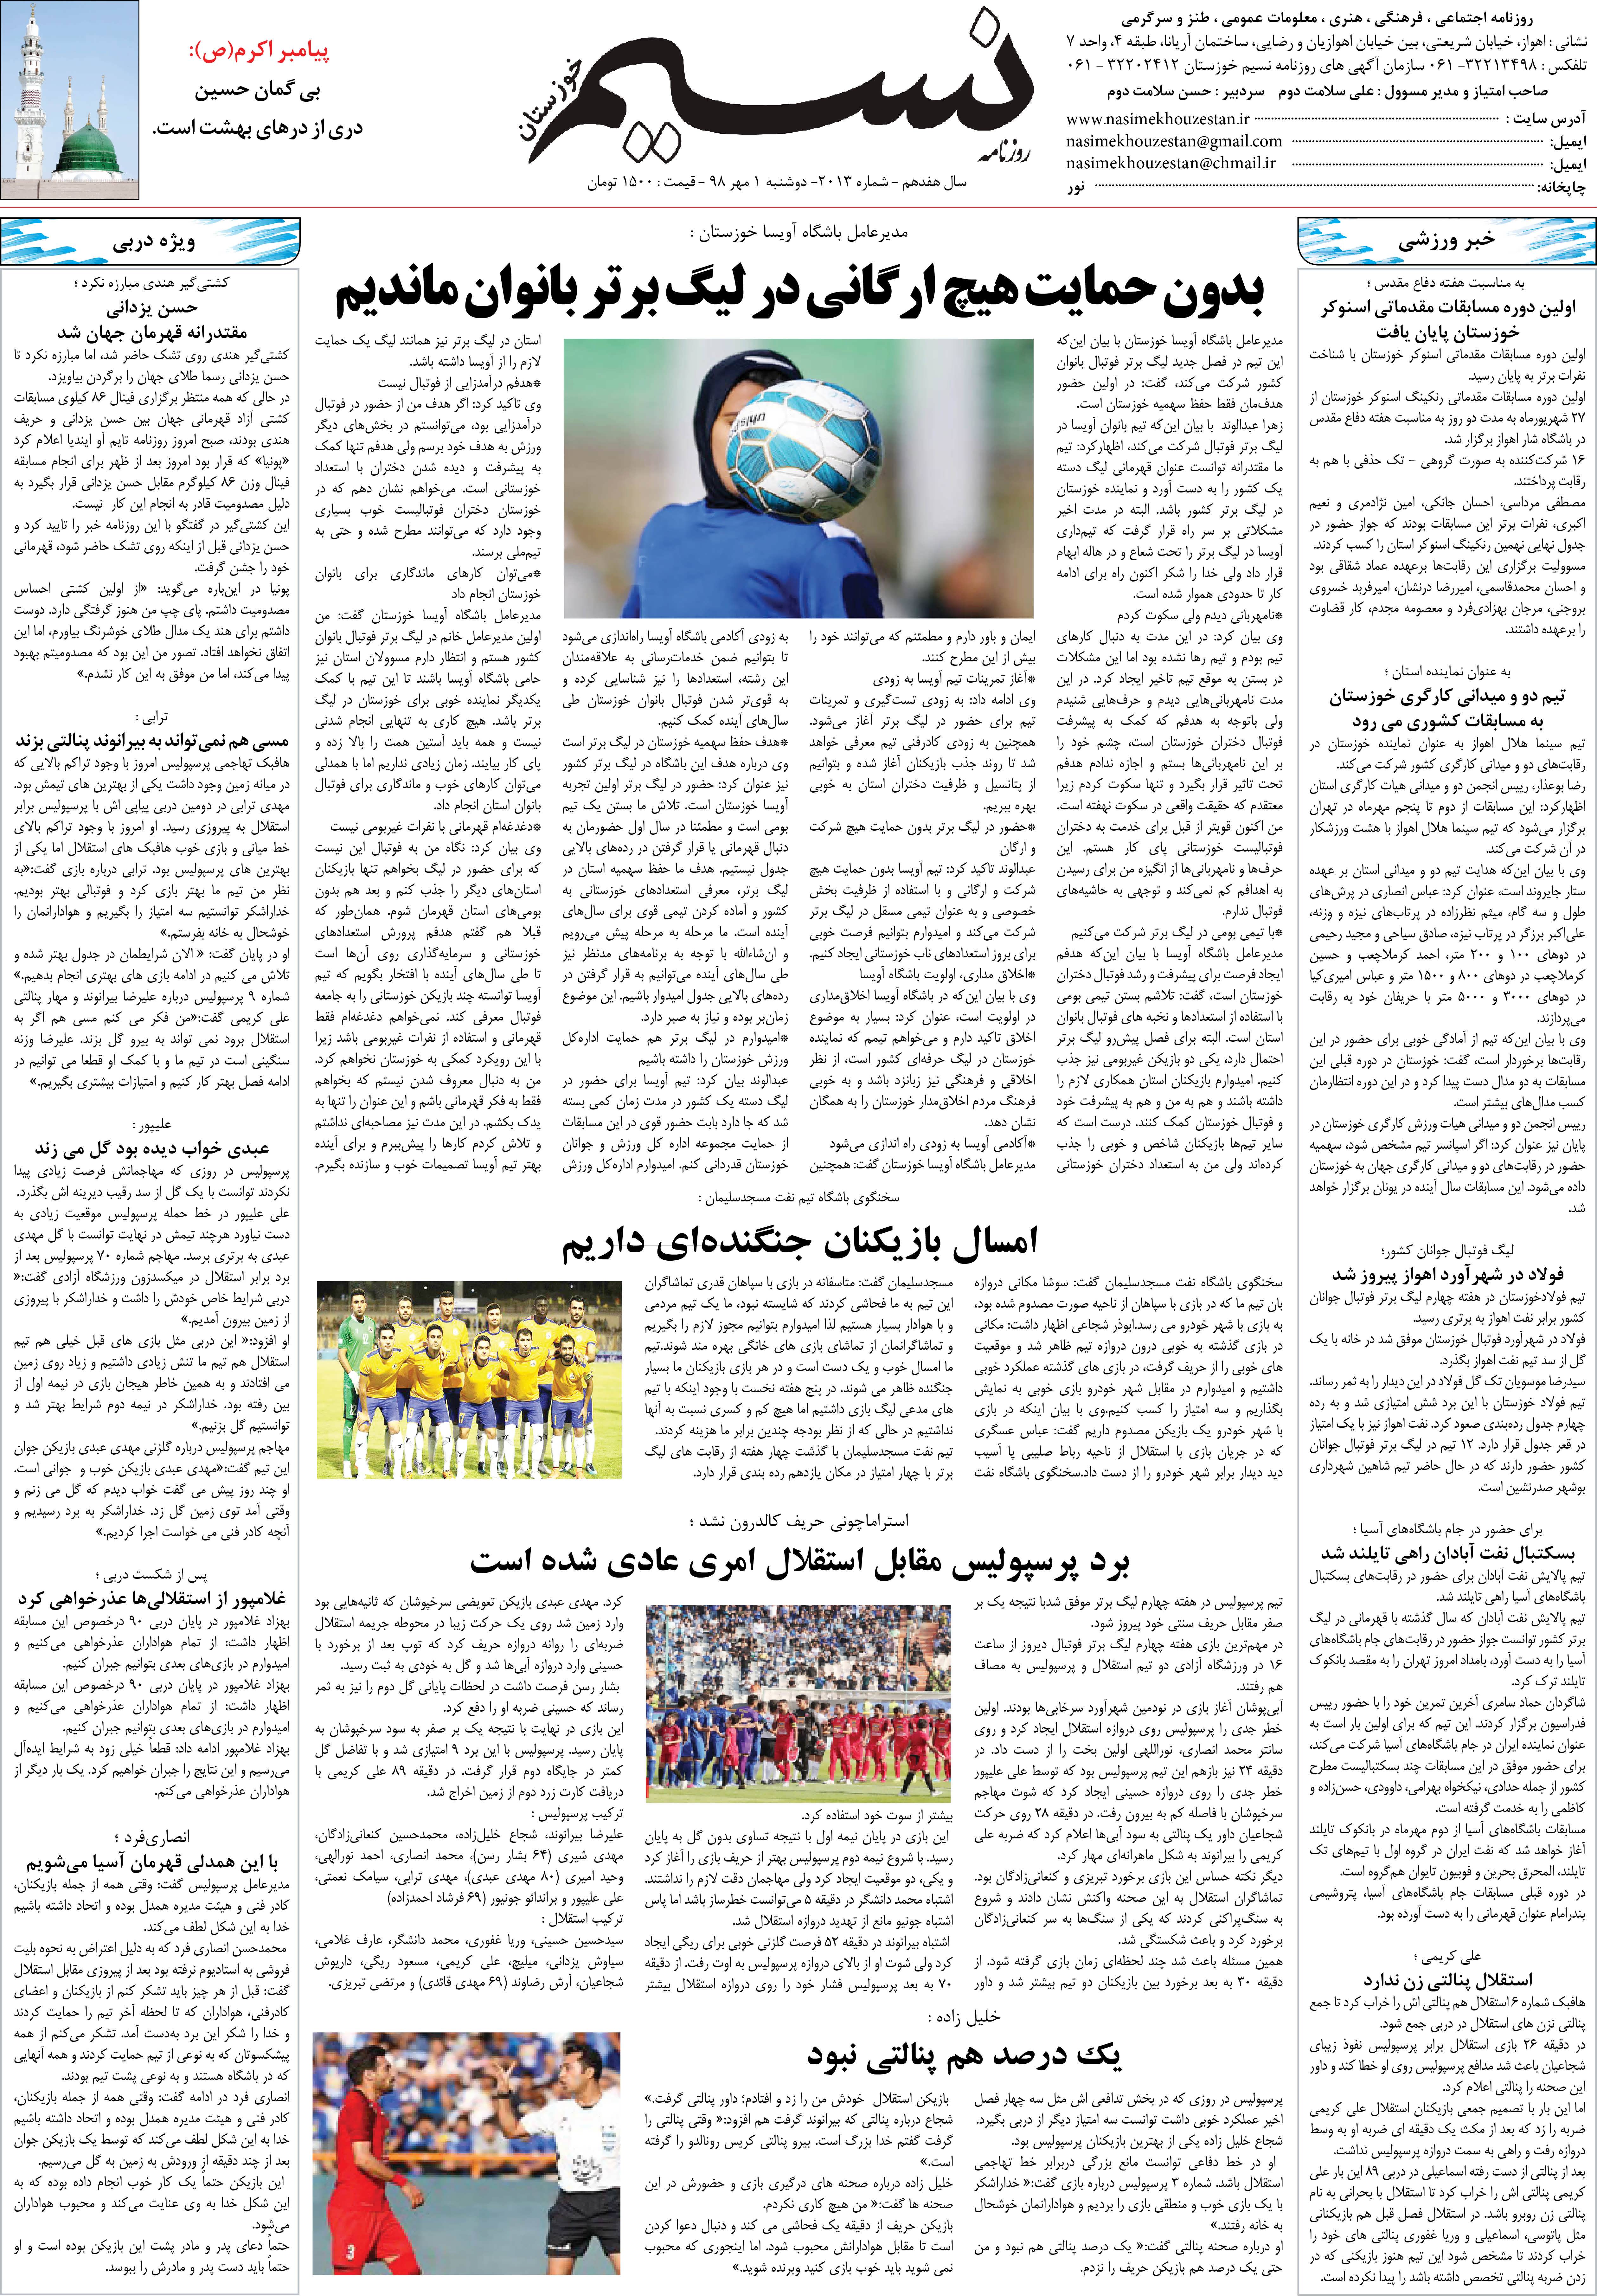 صفحه آخر روزنامه نسیم شماره 2013